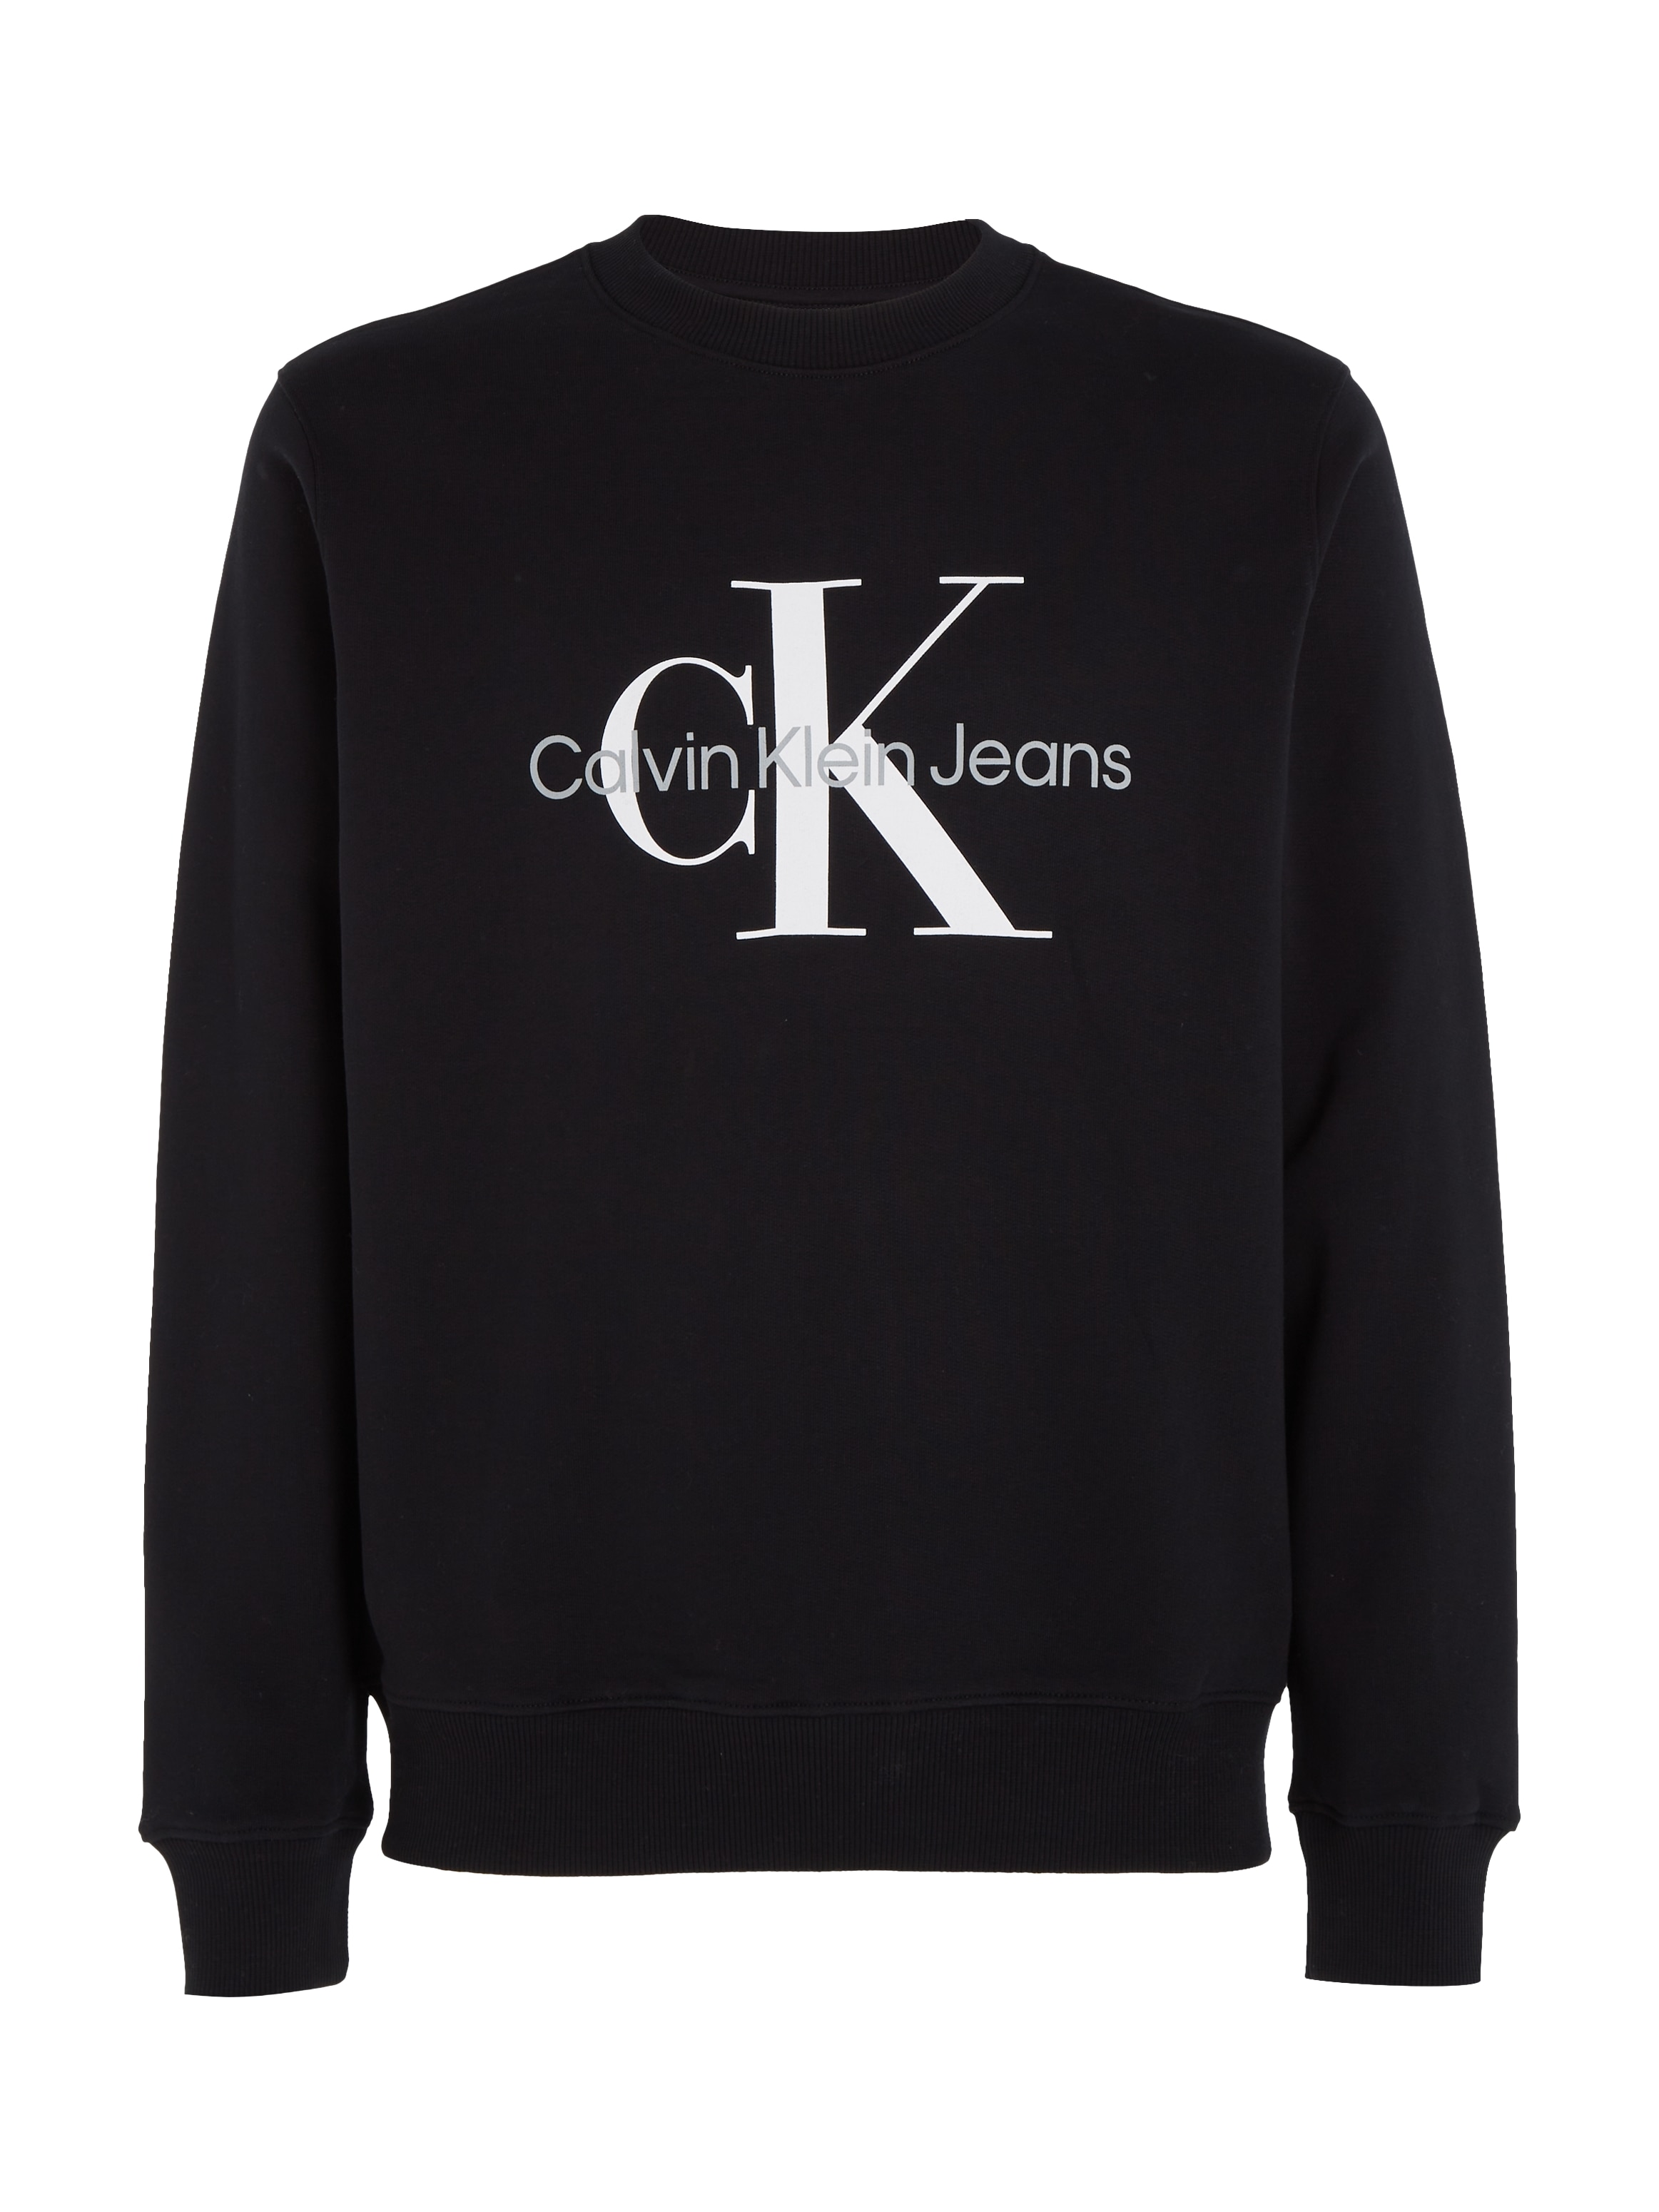 »ICONIC OTTO Jeans Calvin Sweatshirt CREWNECK« bei Klein bestellen MONOGRAM